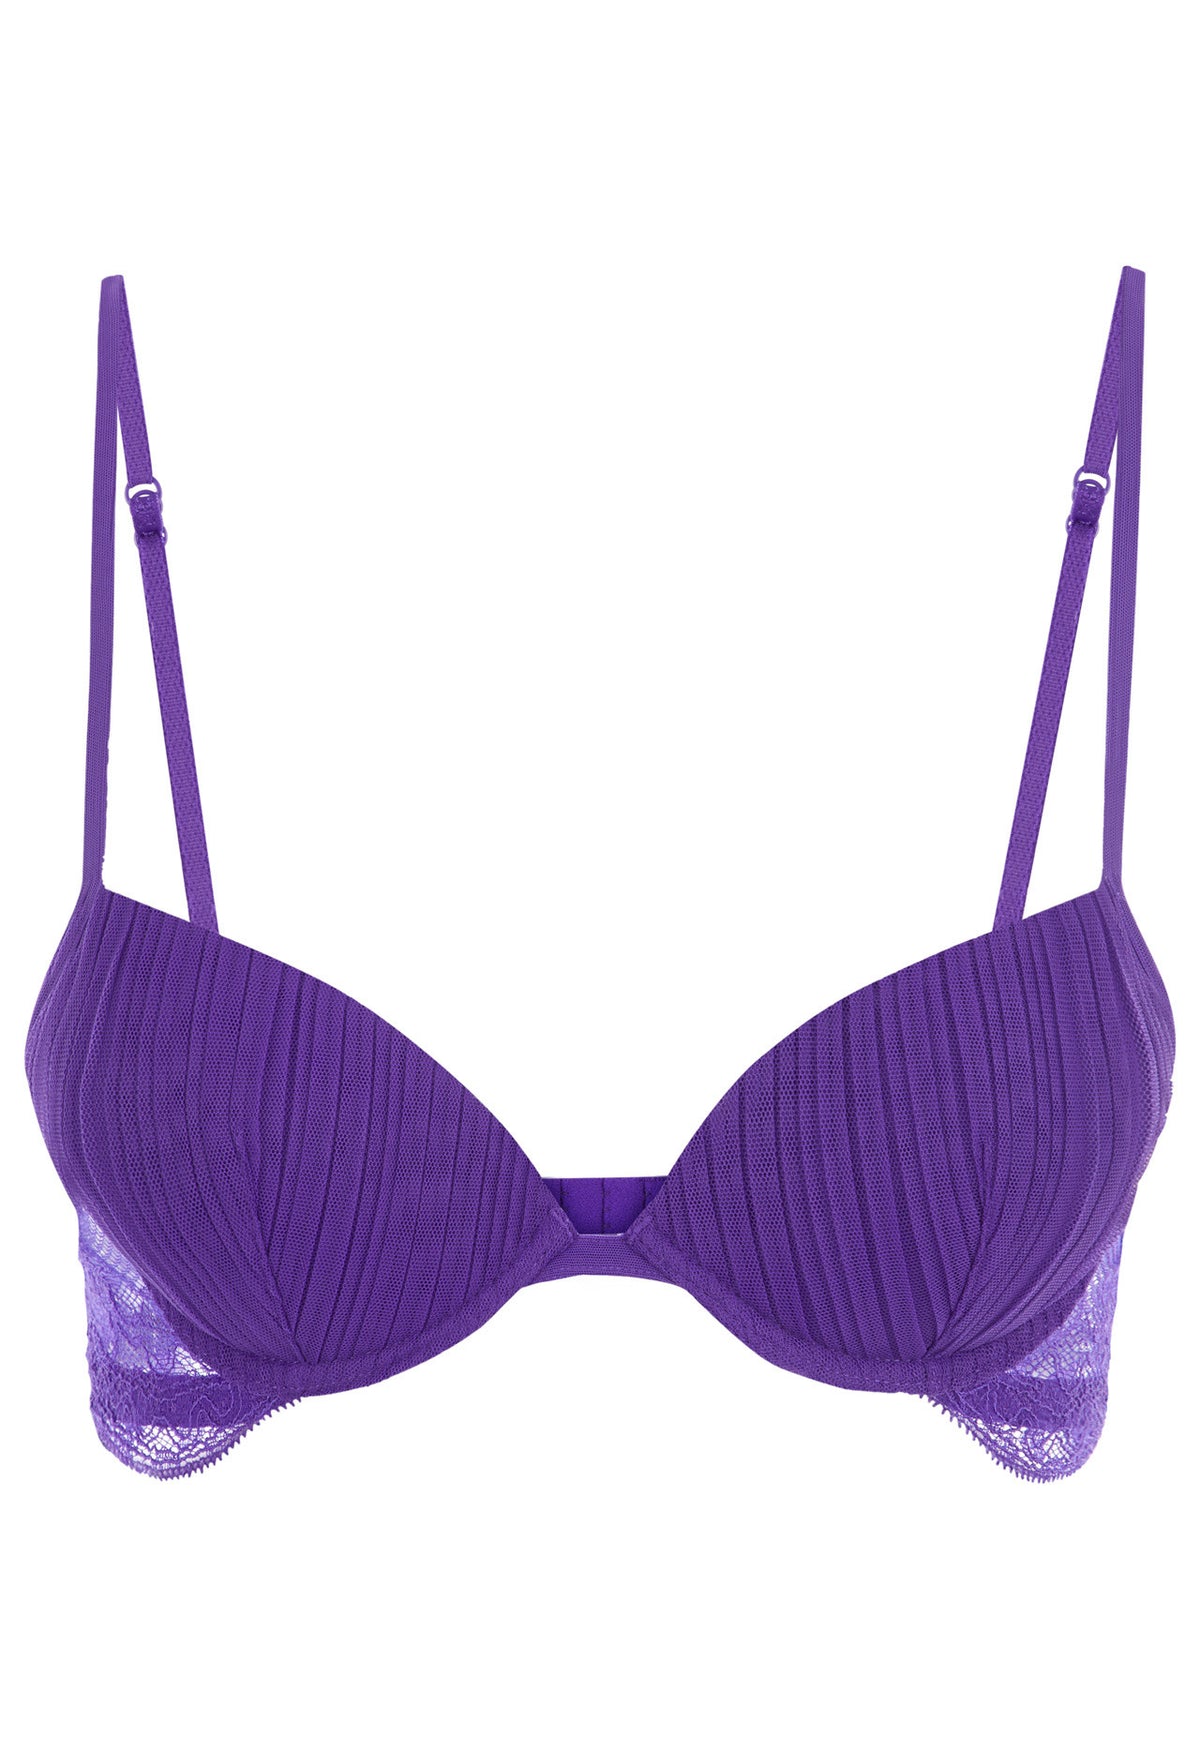 Push-up bra in violet cotton - La Perla - Russia